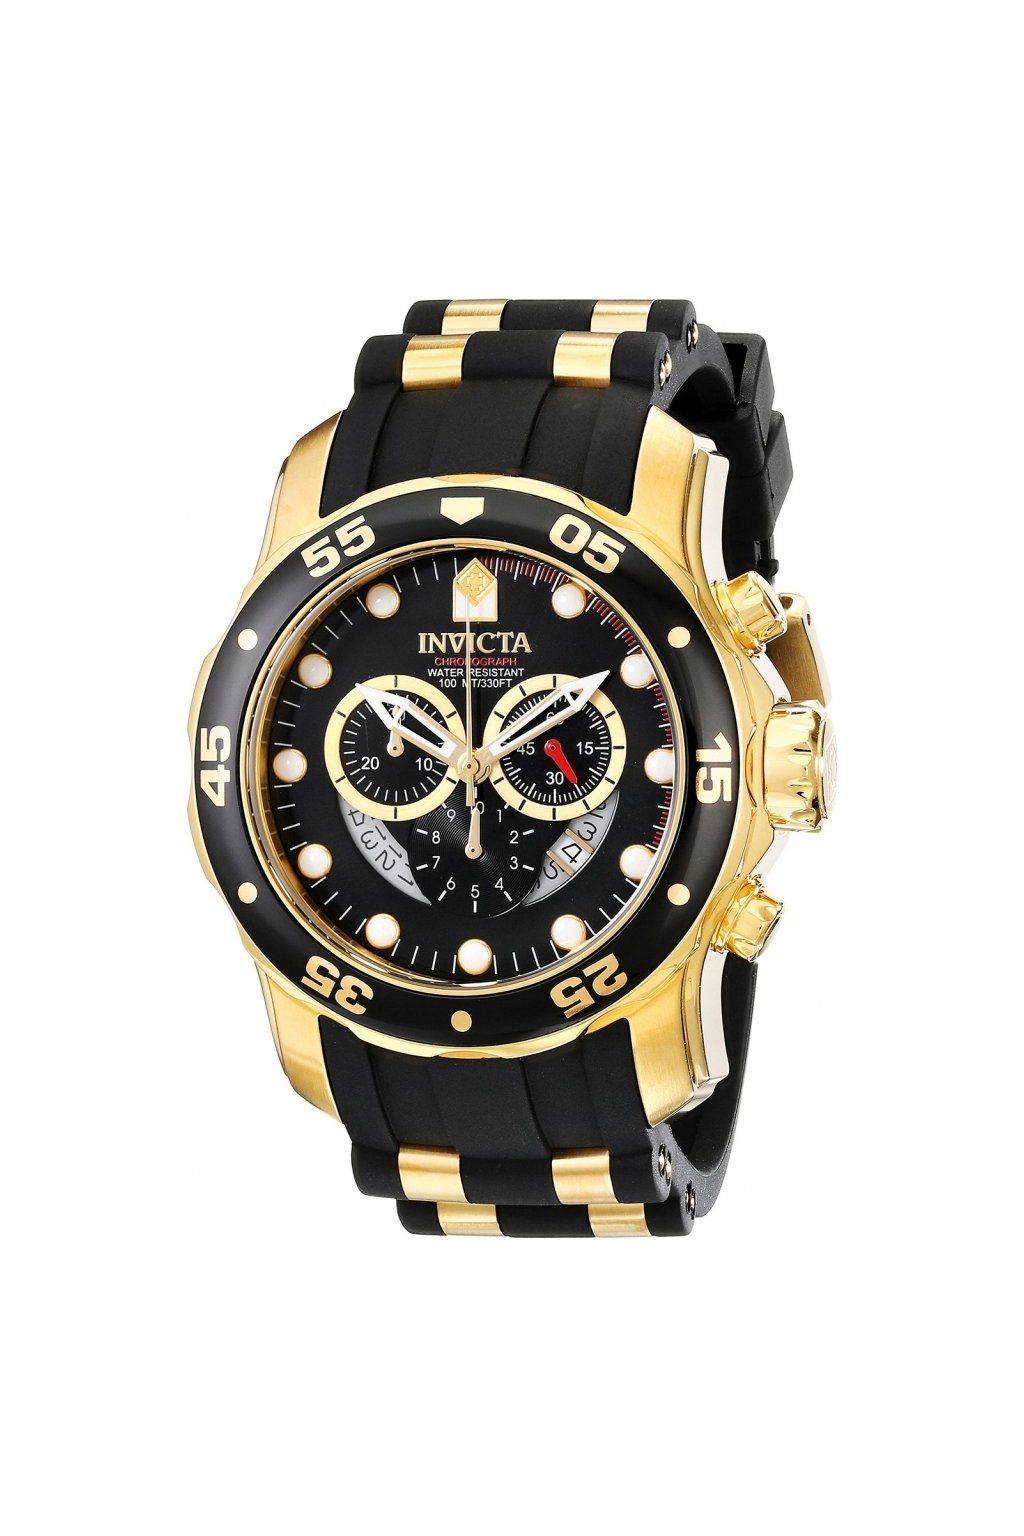 Pánské hodinky Invicta Pro Diver 6981  + Kufr Invicta v hodnotě 1000 Kč ZDARMA